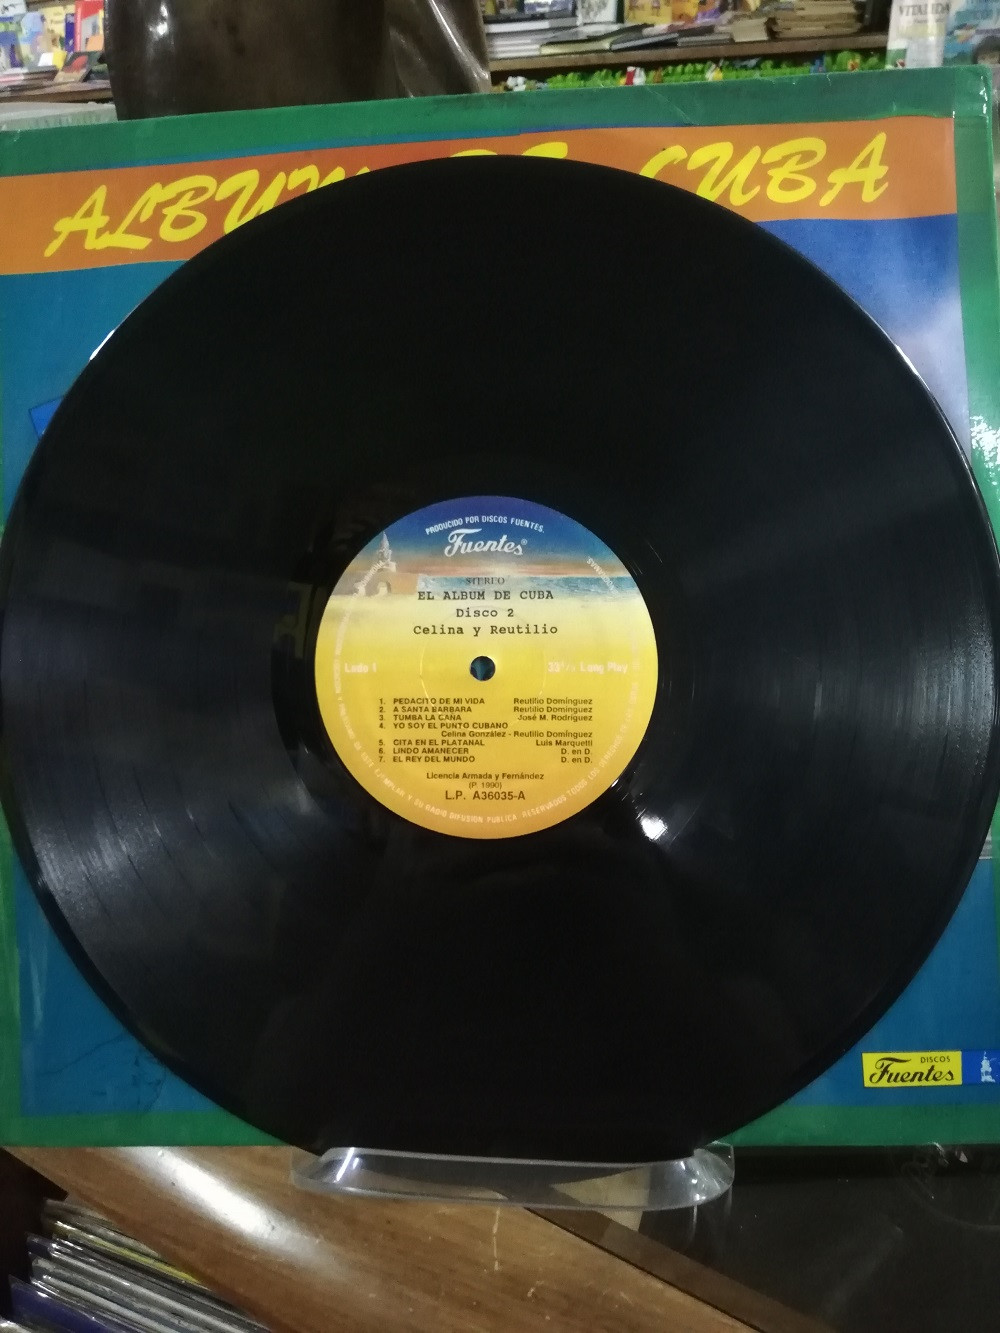 Imagen LP X 3 ALBUM DE CUBA - GUILLERMO PORTABALES/CELINA Y REUTILIO/GUARACHEROS DE ORIENTE 5